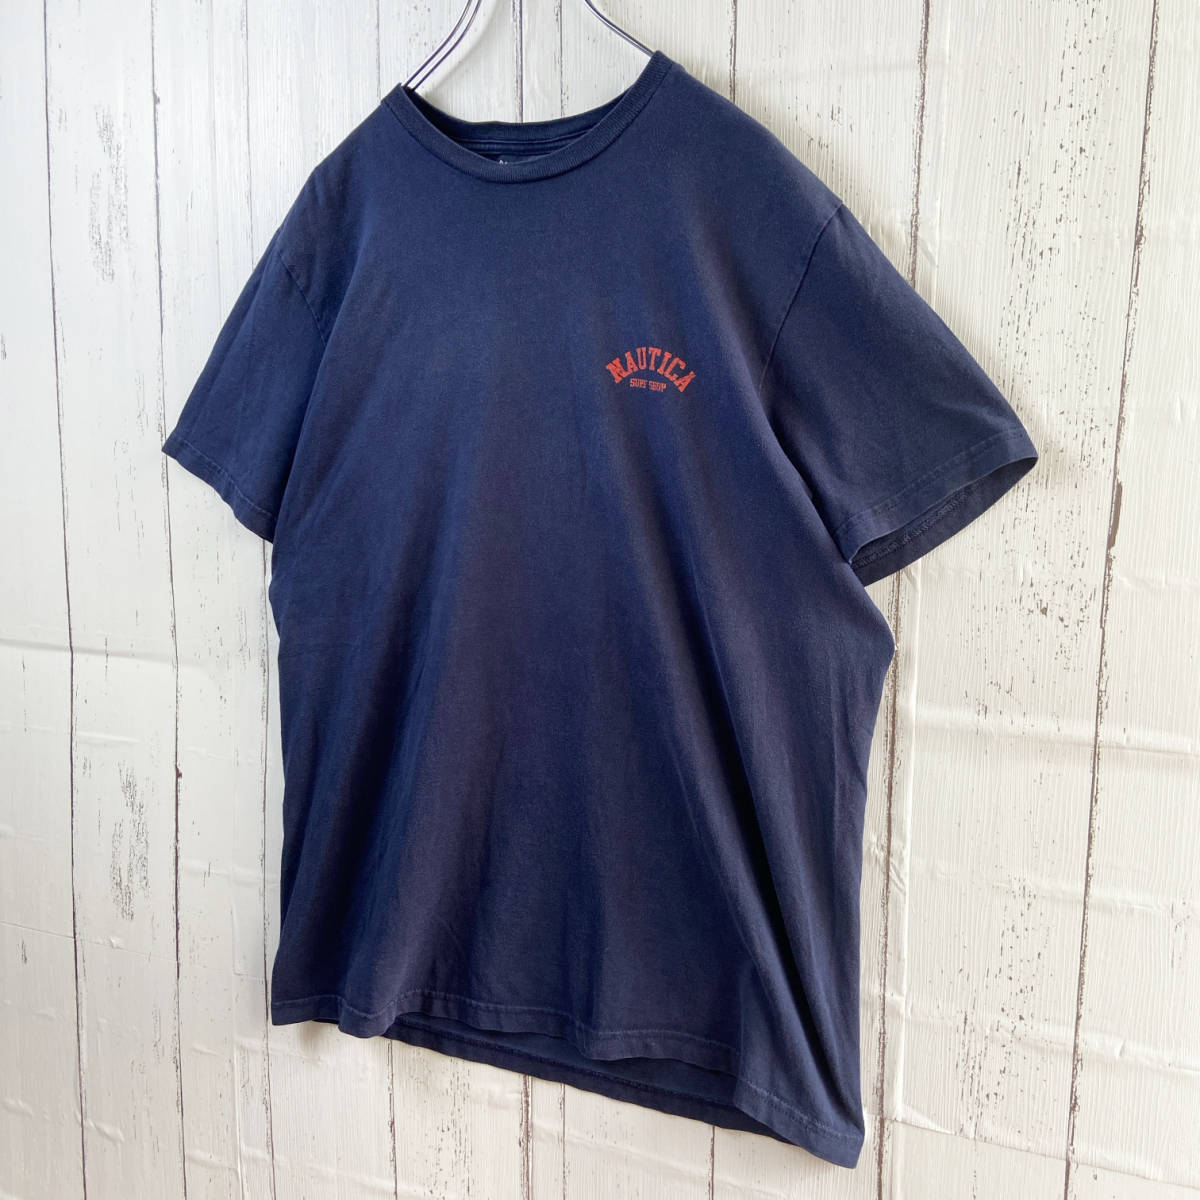 【USED】 ノーティカ NAUTICA Tシャツ ビッグロゴ 90s USA 古着 ネイビー Mサイズ (L相当) ☆送料無料☆_画像4